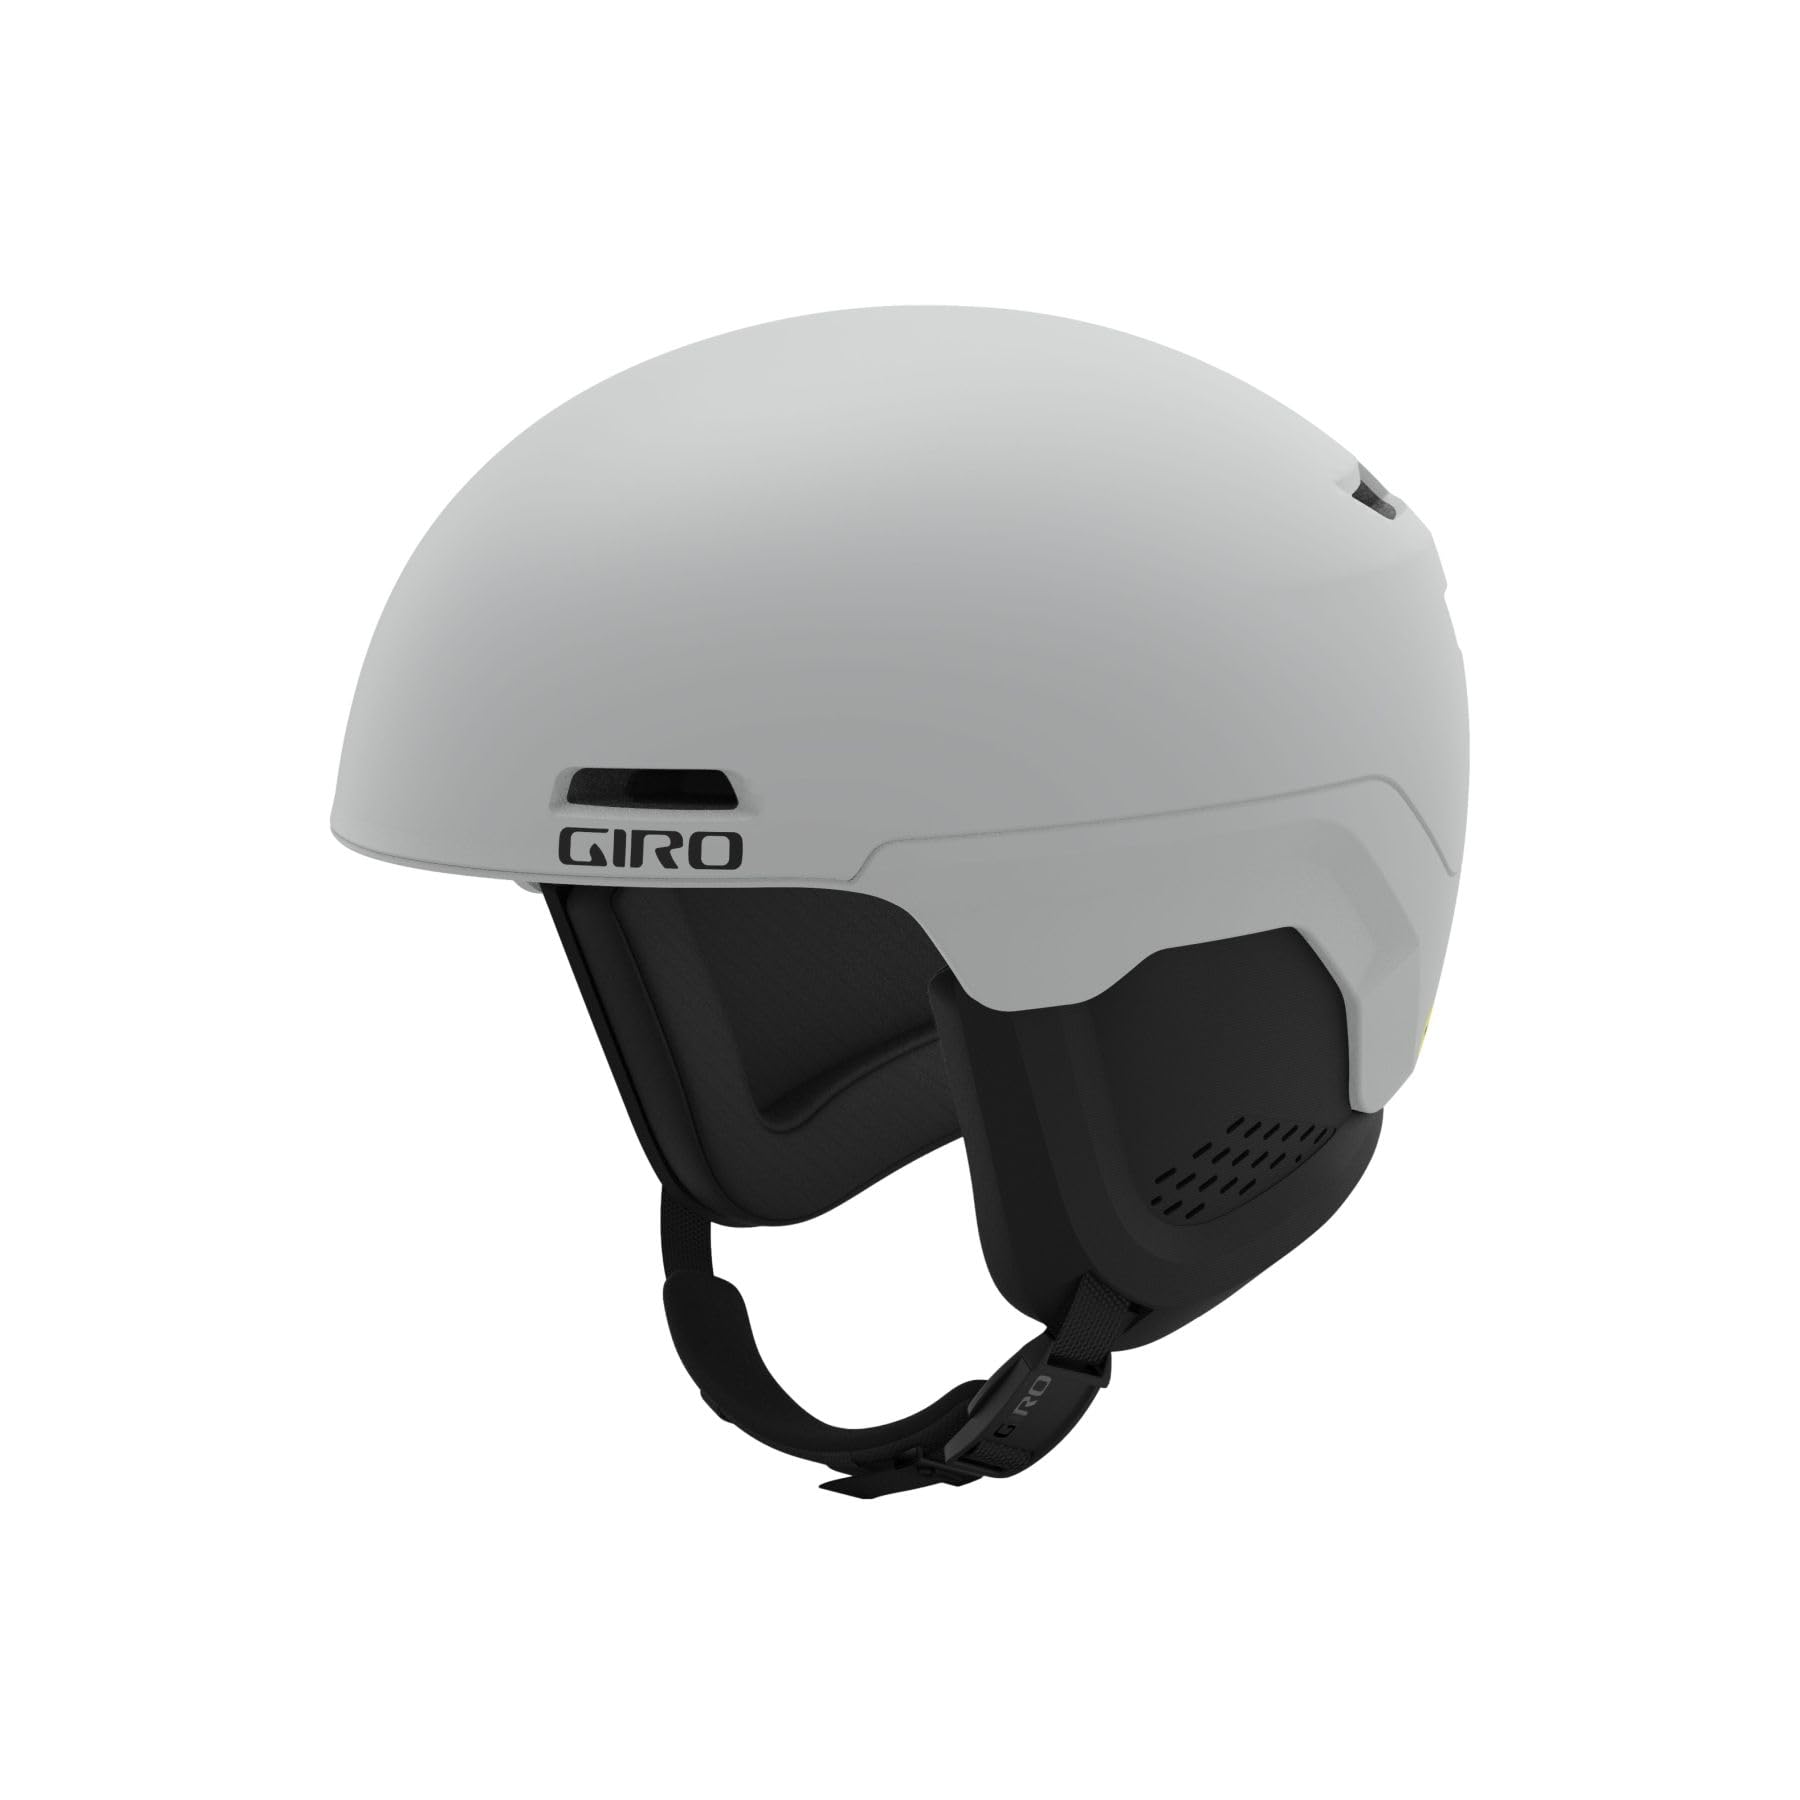 Giro Owen Spherical Ski Helmet - Snowboarding Helmet for Men Women and Youth - Matte Light Grey - L 59-62.5cm並行輸入